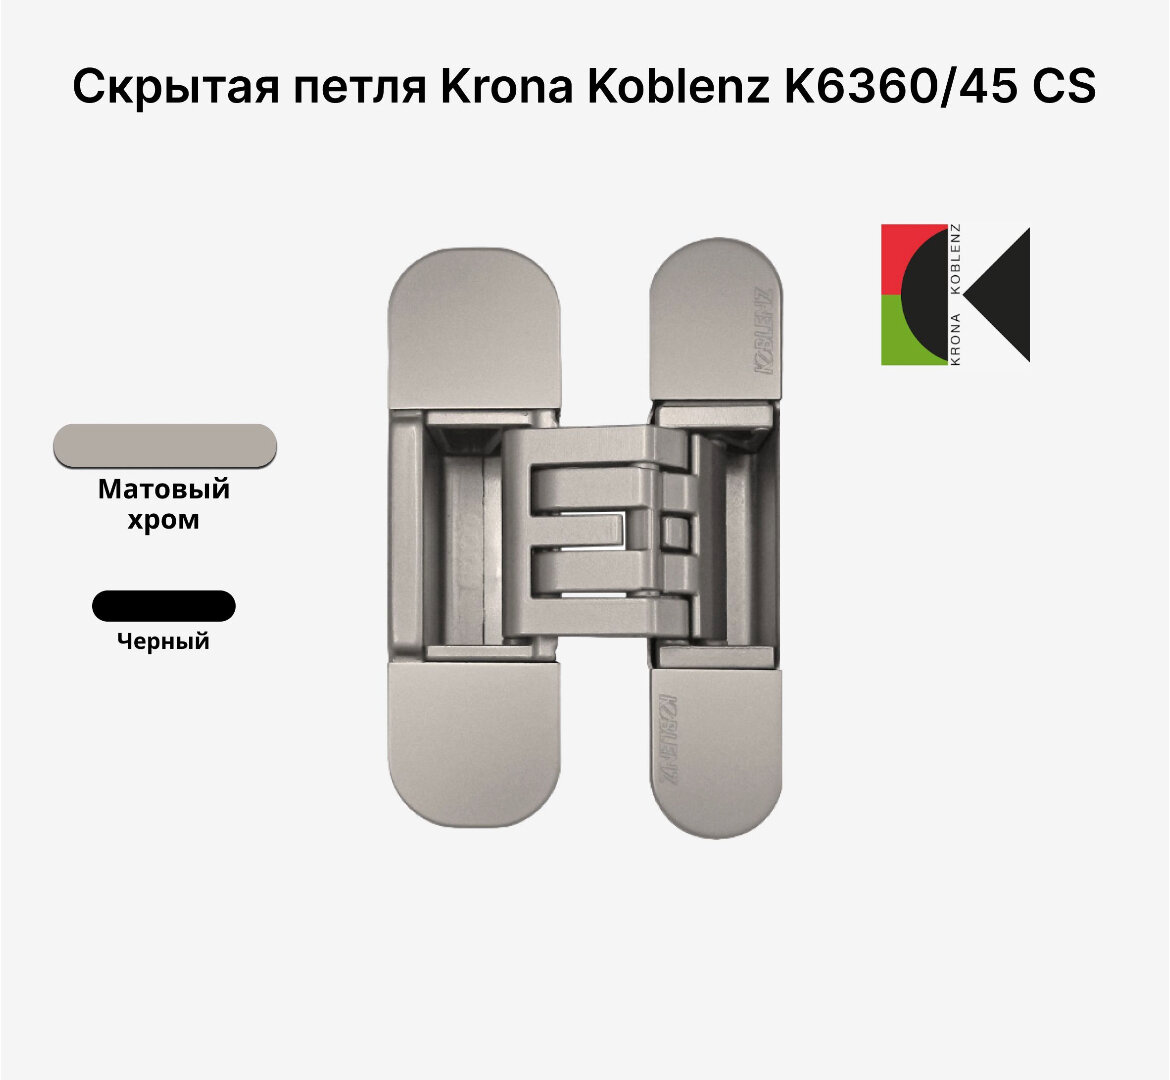 Скрытая петля KRONA KOBLENZ KUBICA Hybrid K6360/45 CS, Матовый хром